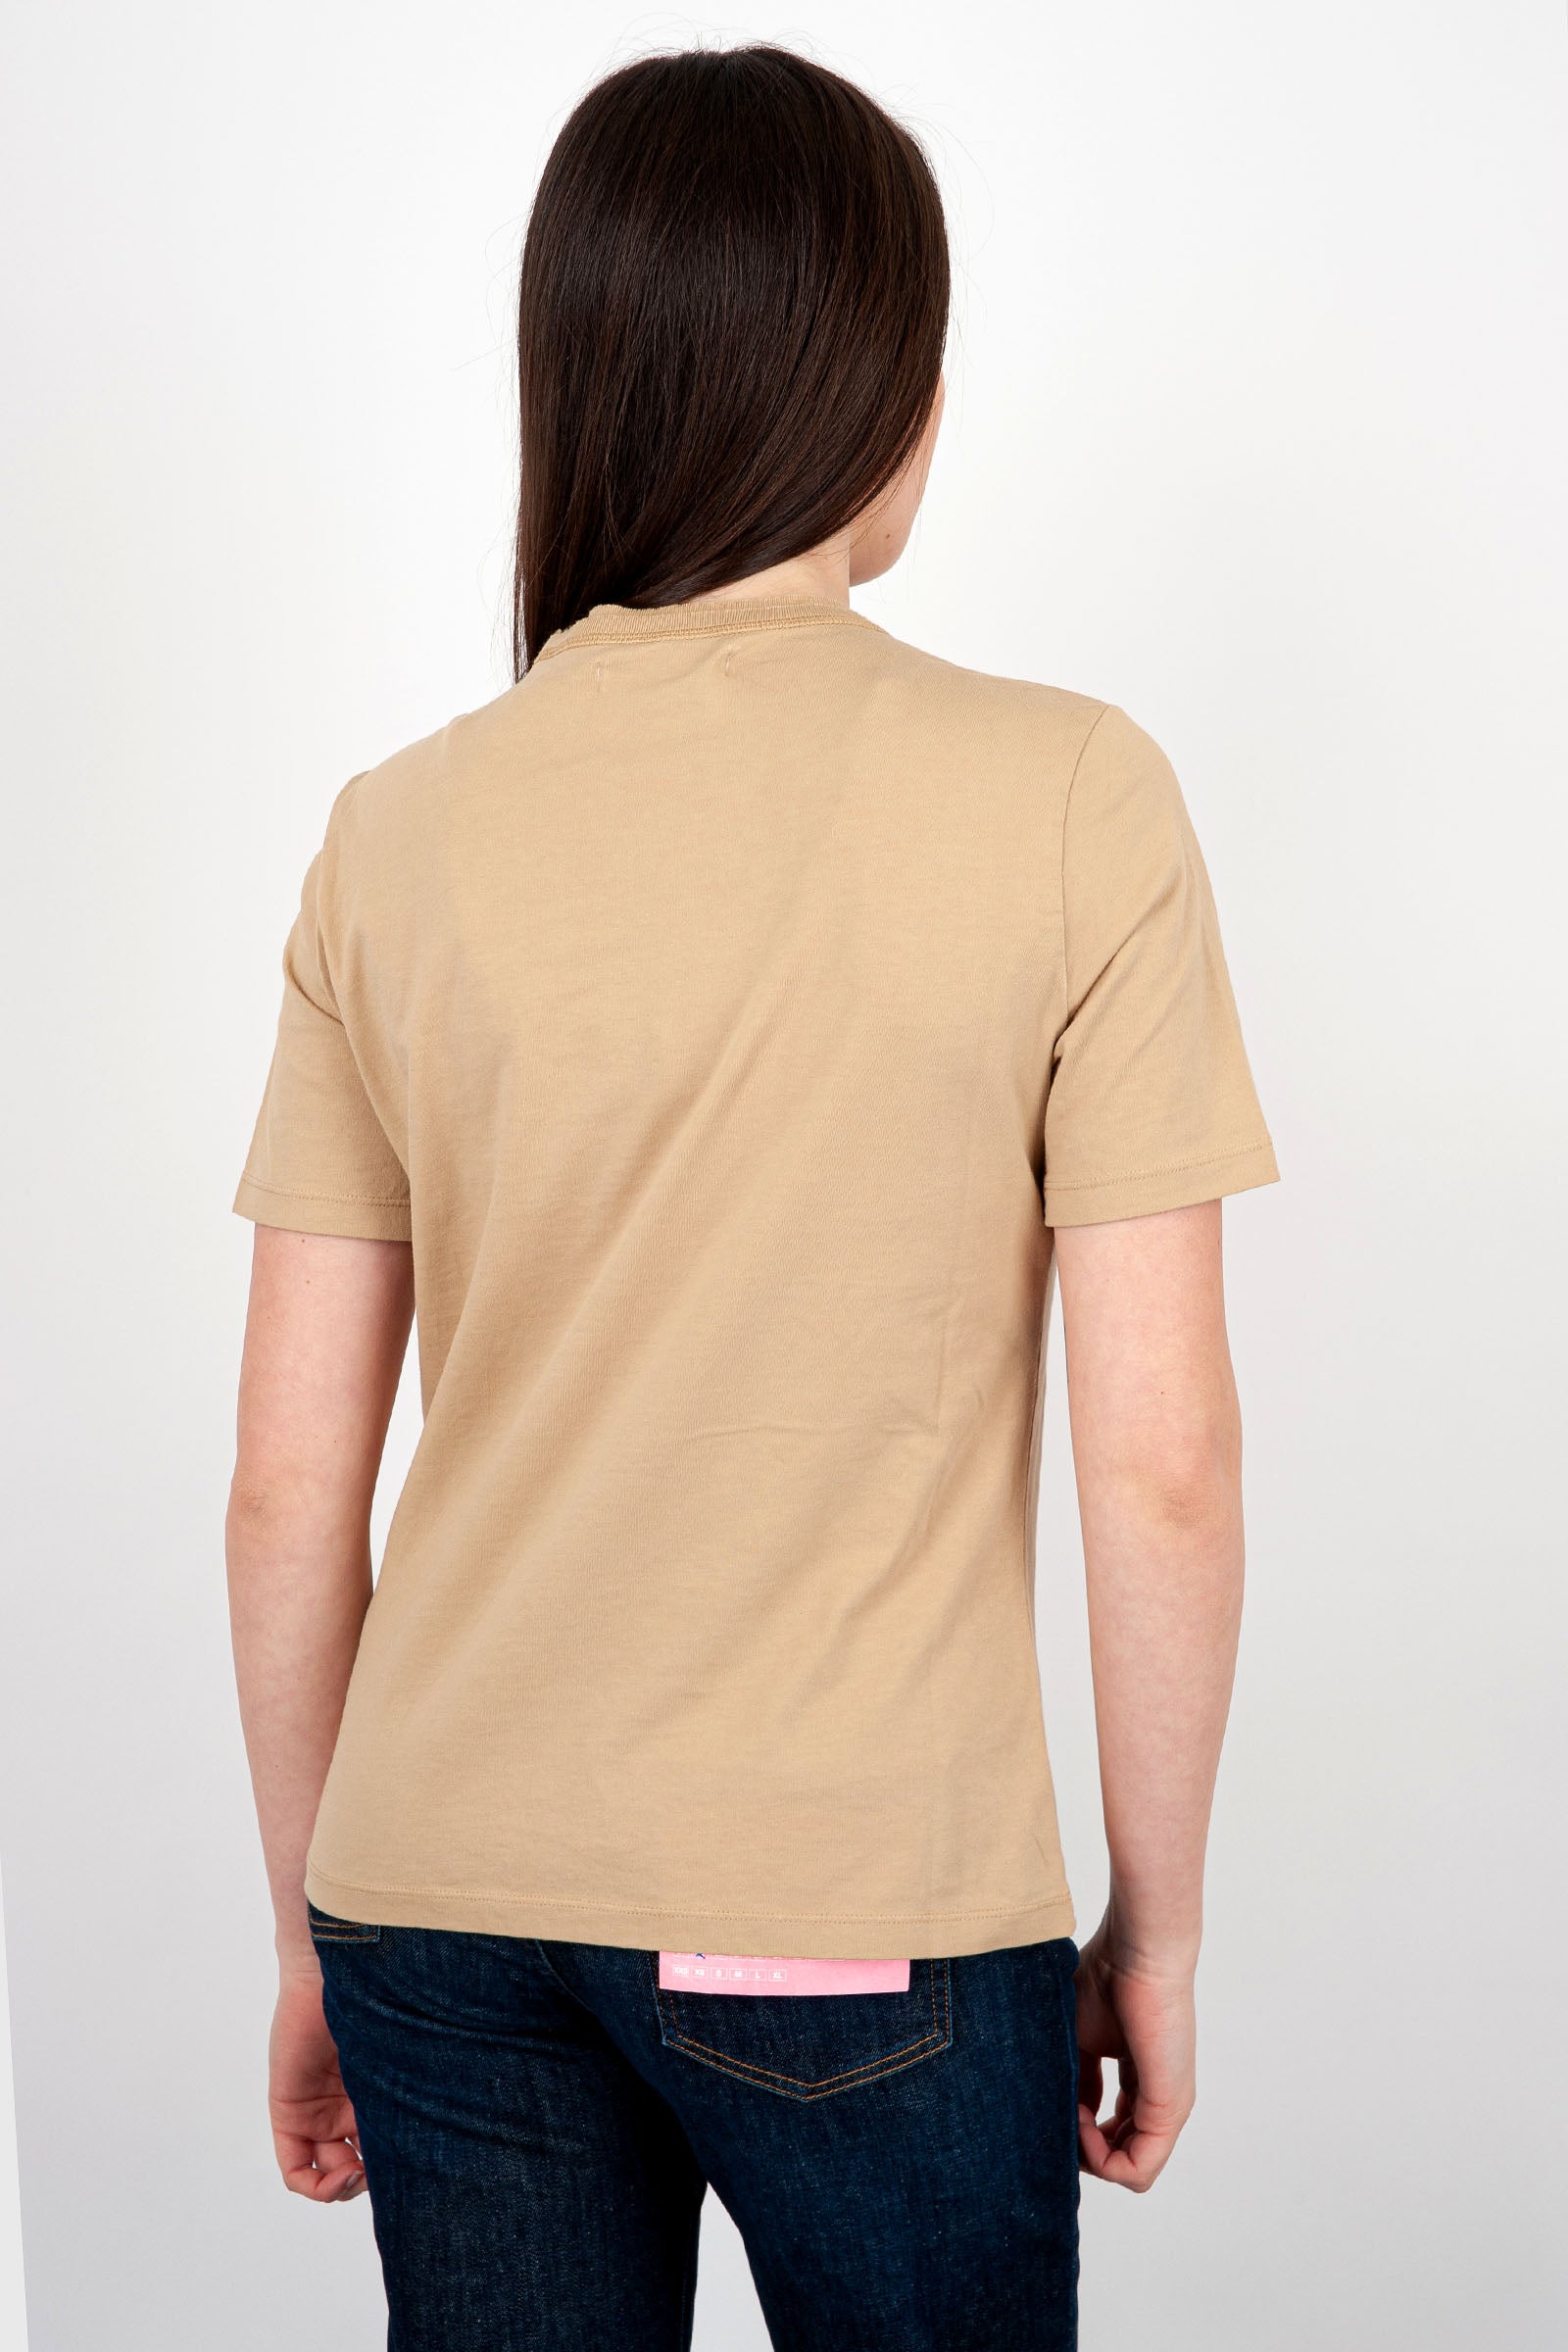 Grifoni T-Shirt Box Cotton Sand - 4